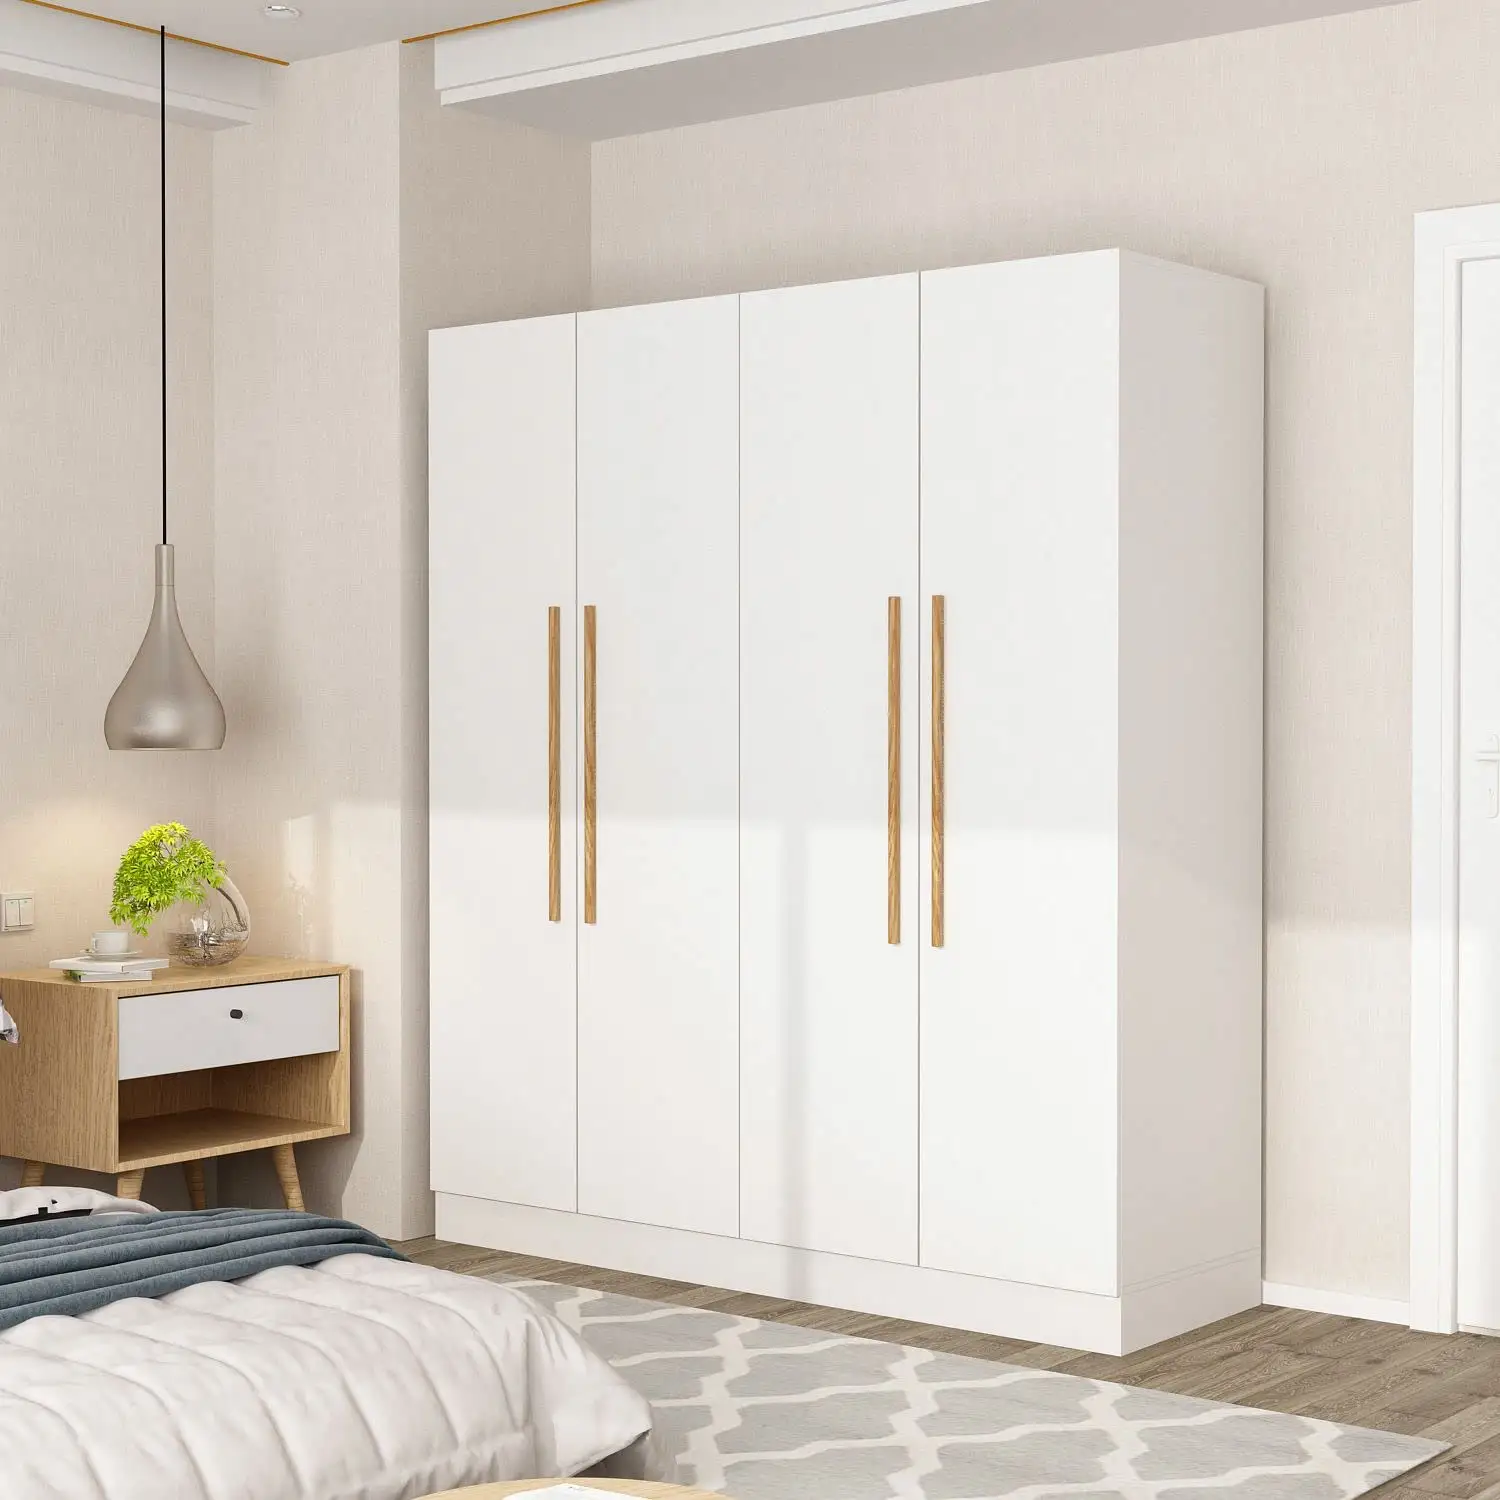 आधुनिक दरवाजा mdf लकड़ी के कपड़े दर्पण बेडरूम अलमारी अलमारी कोठरी बेडरूम फर्नीचर आर्मेरी अलमारी अलमारी अलमारी